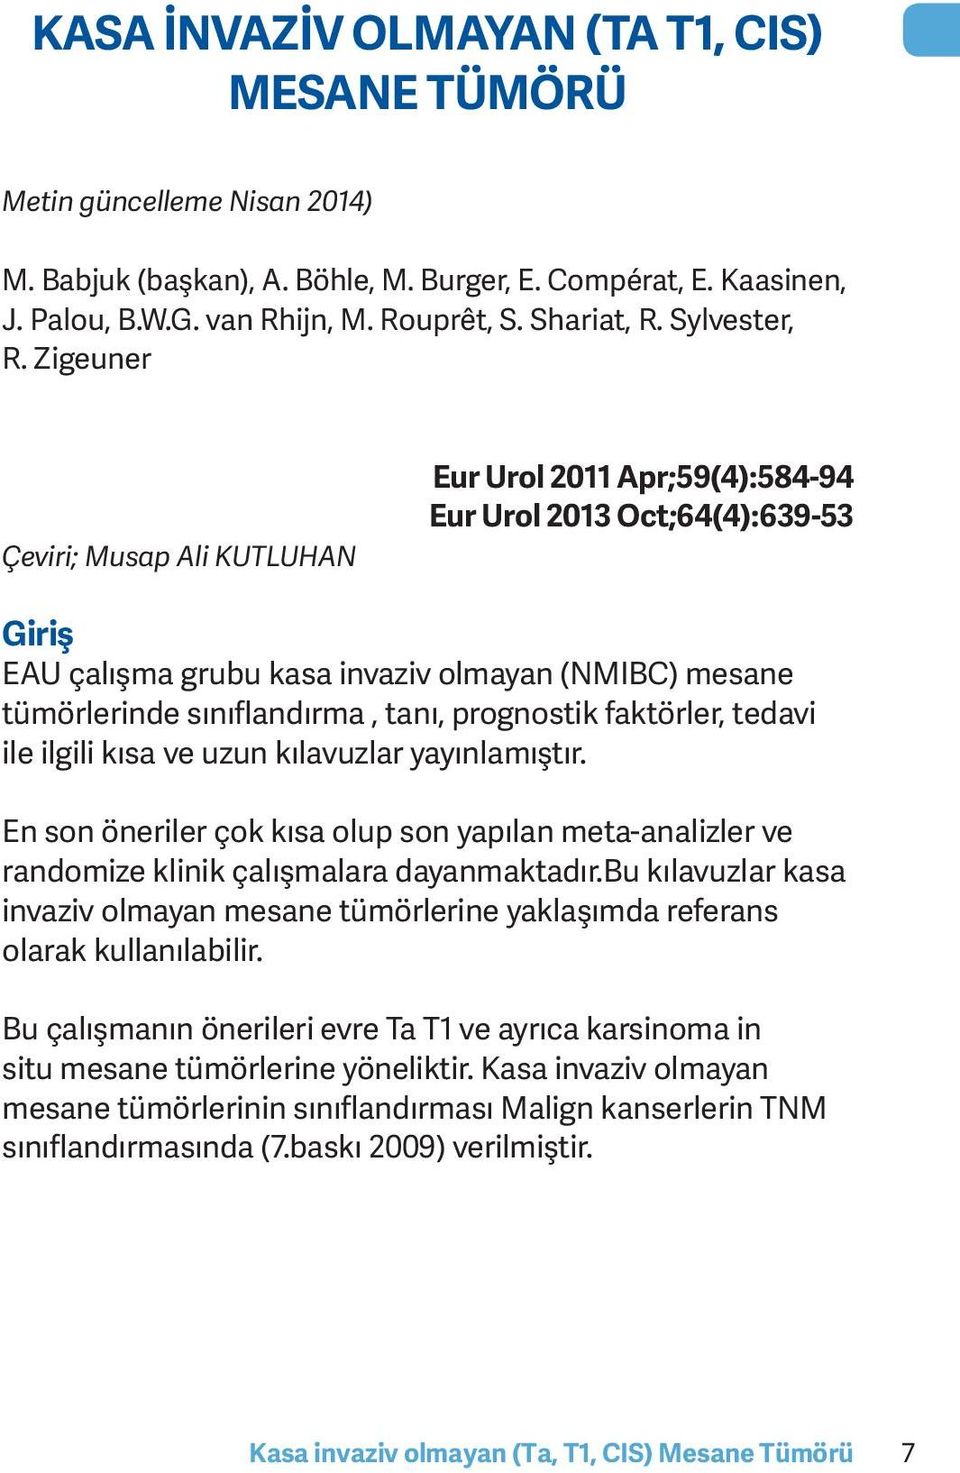 Zigeuner Çeviri; Musap Ali KUTLUHAN Eur Urol 2011 Apr;59(4):584-94 Eur Urol 2013 Oct;64(4):639-53 Giriş EAU çalışma grubu kasa invaziv olmayan (NMIBC) mesane tümörlerinde sınıflandırma, tanı,